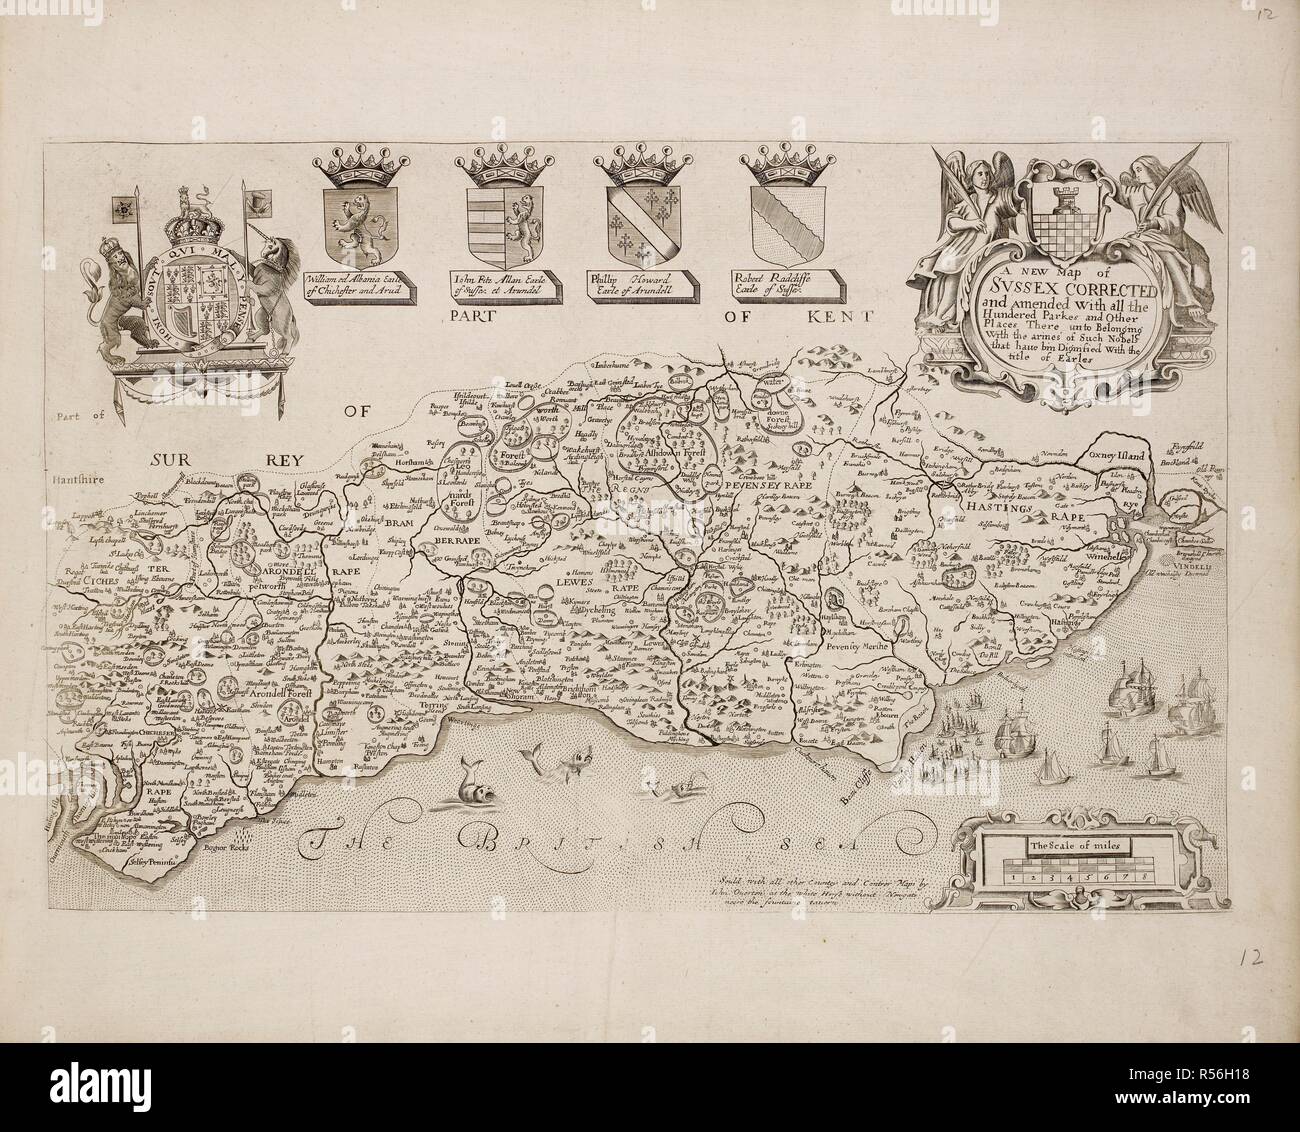 Mapa de Sussex corregido. Una colección de 37 mapas de los condados de Inglaterra. Londres. H. Overton, 1714. Una colección de 37 mapas de los condados de Inglaterra, siendo las reimpresiones, de J. Speedâ€™s mapas, por Henry Overton, junto con los de P. Stent Reimpreso por John Overton, y mapas de Derbyshire y Yorkshire grabado por S. Nicholls. Fuente: Maps.145.c.9 12. Idioma: Inglés. Foto de stock